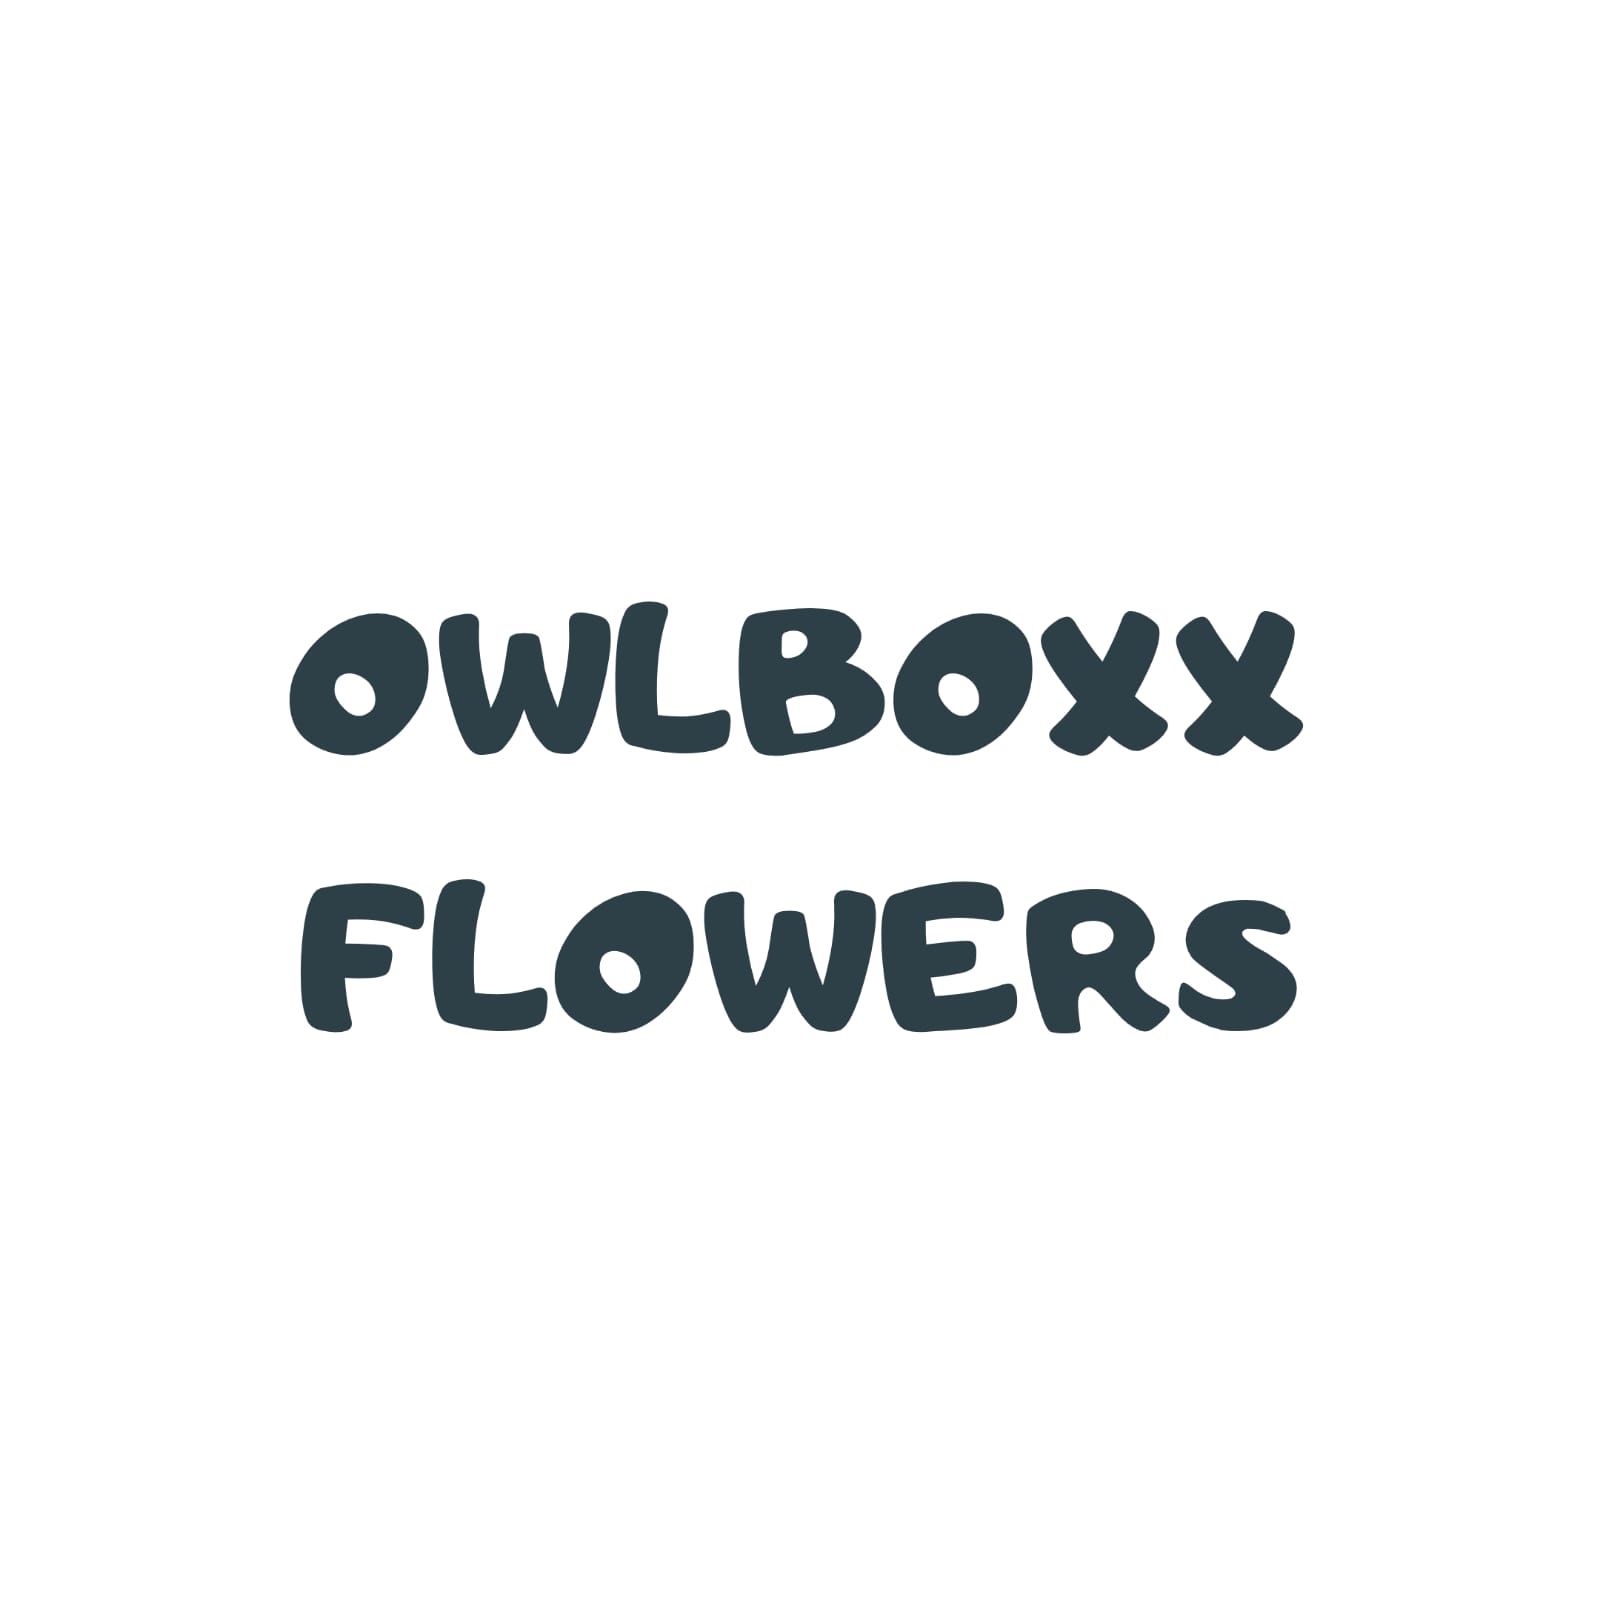 Owlboxx Flowers